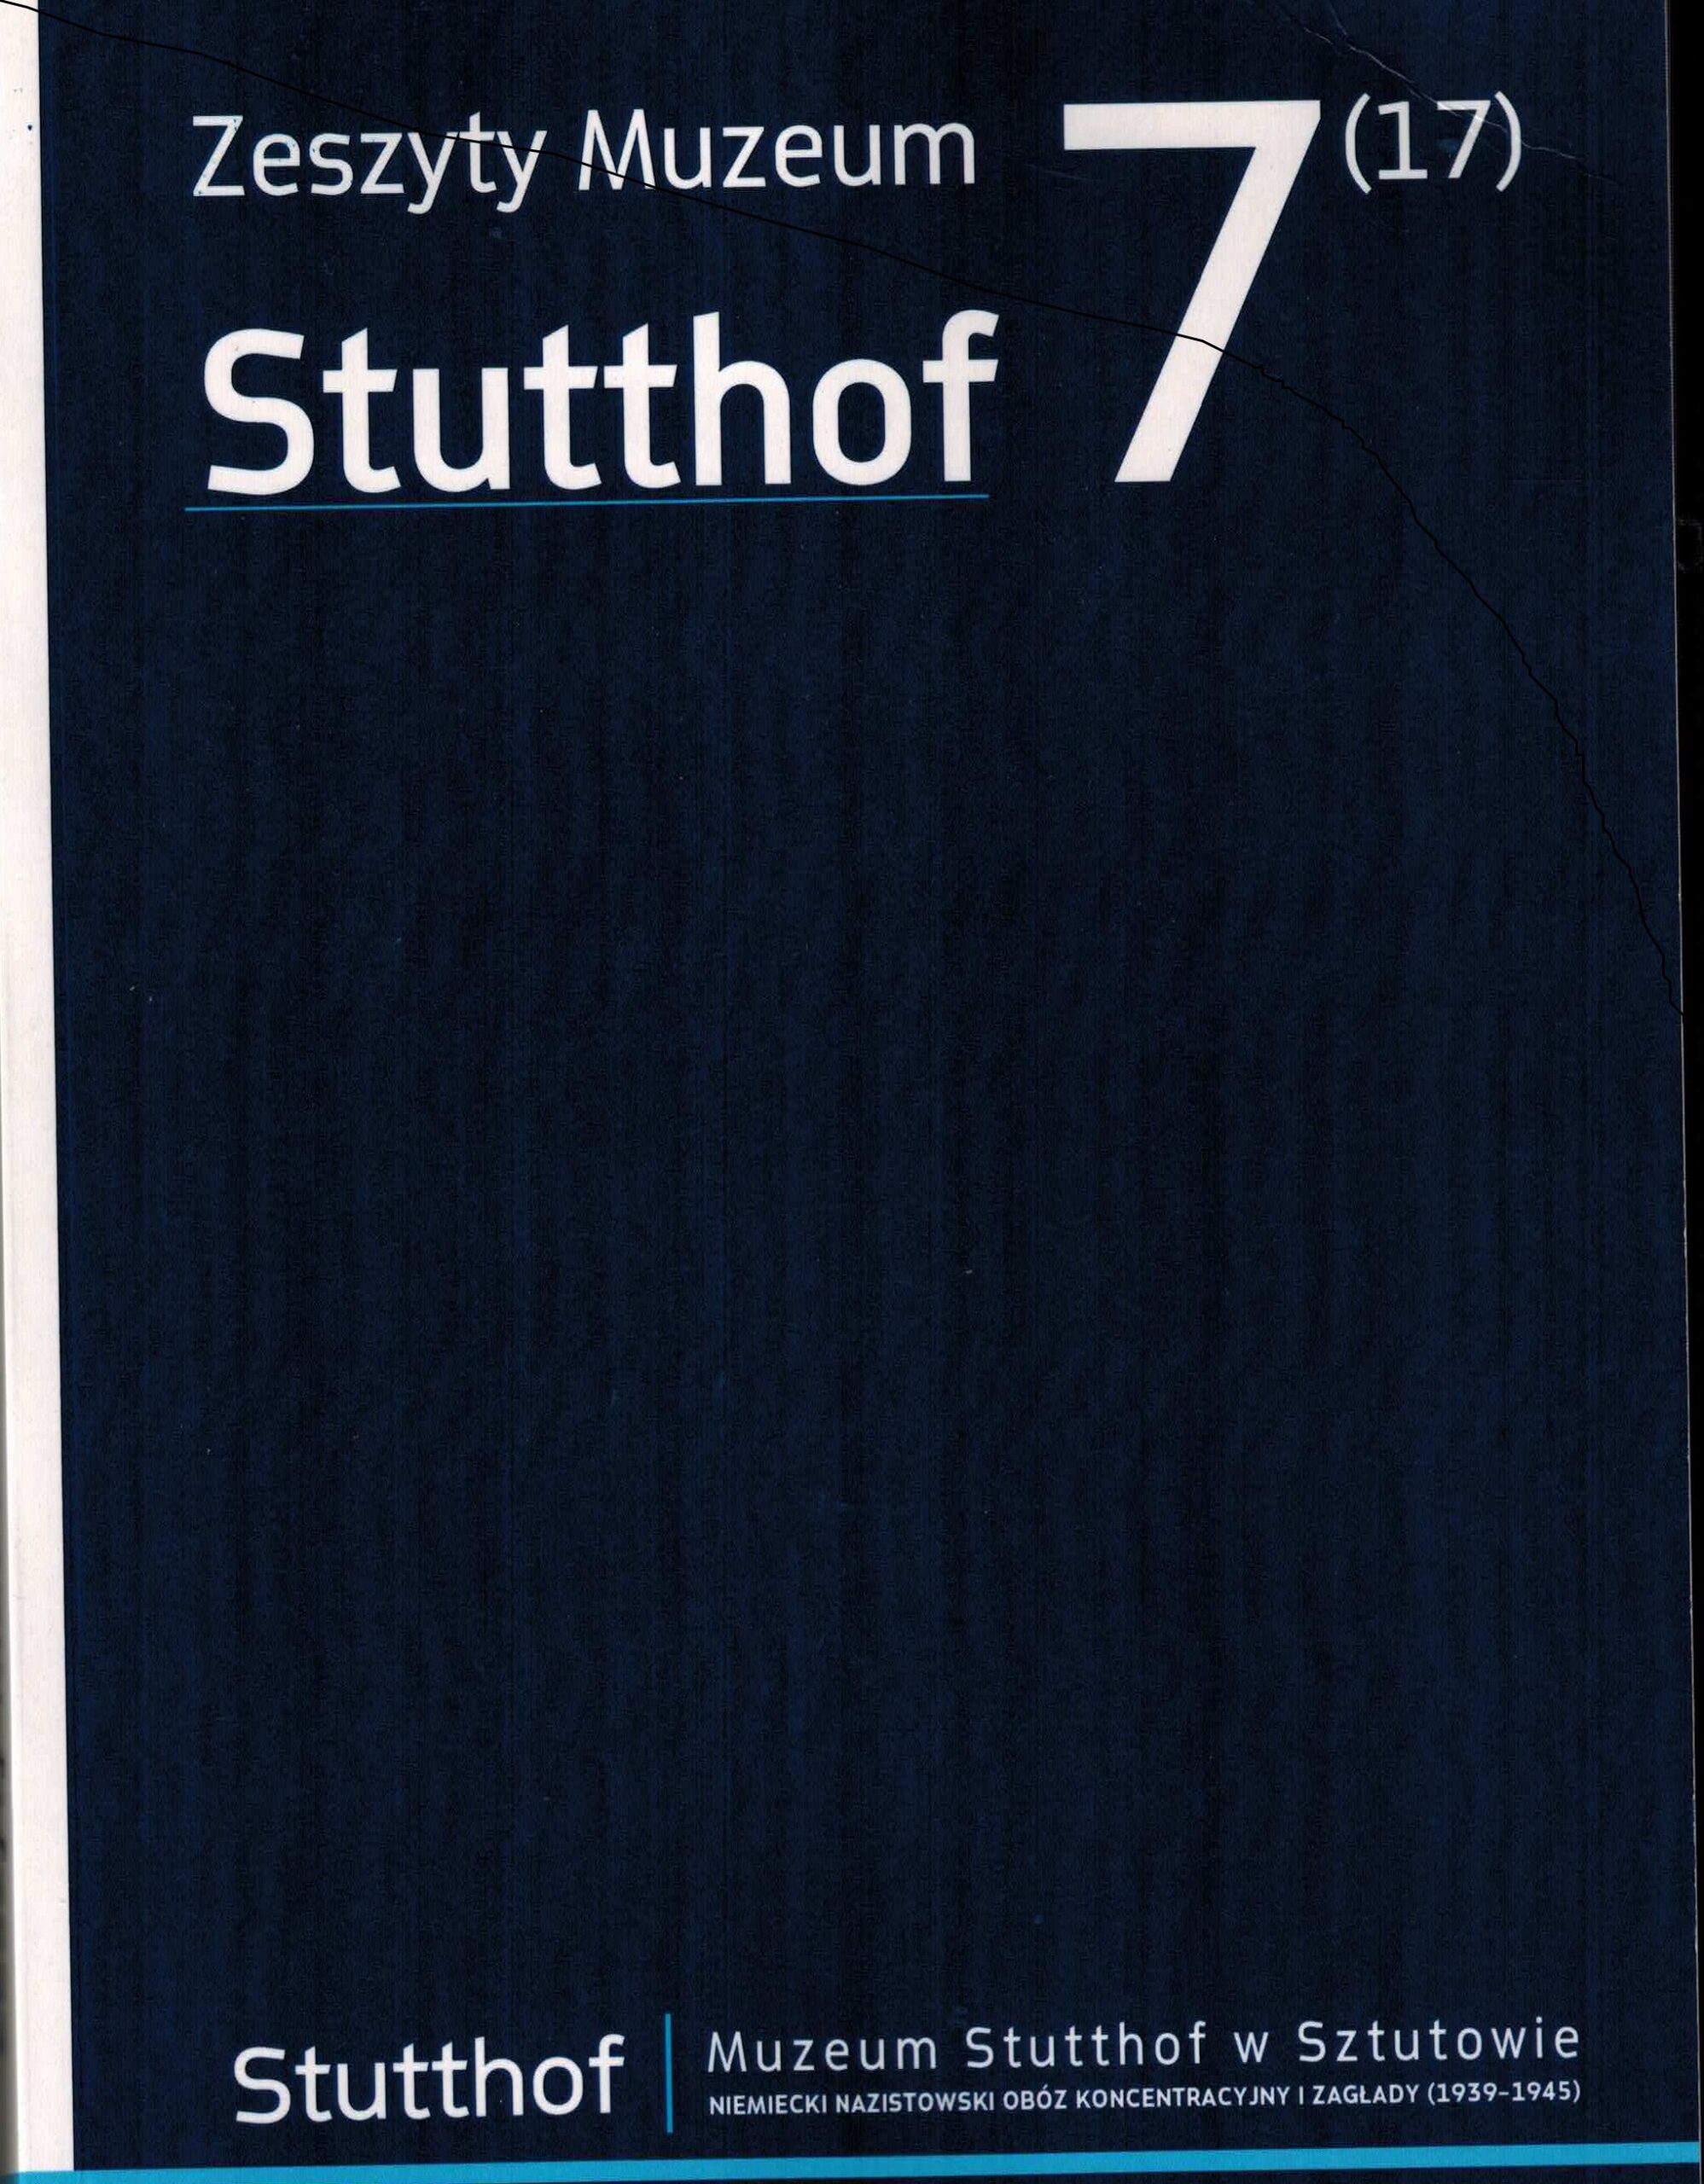 Okładka publikacji Zeszyty Muzeum Stutthof nr 7